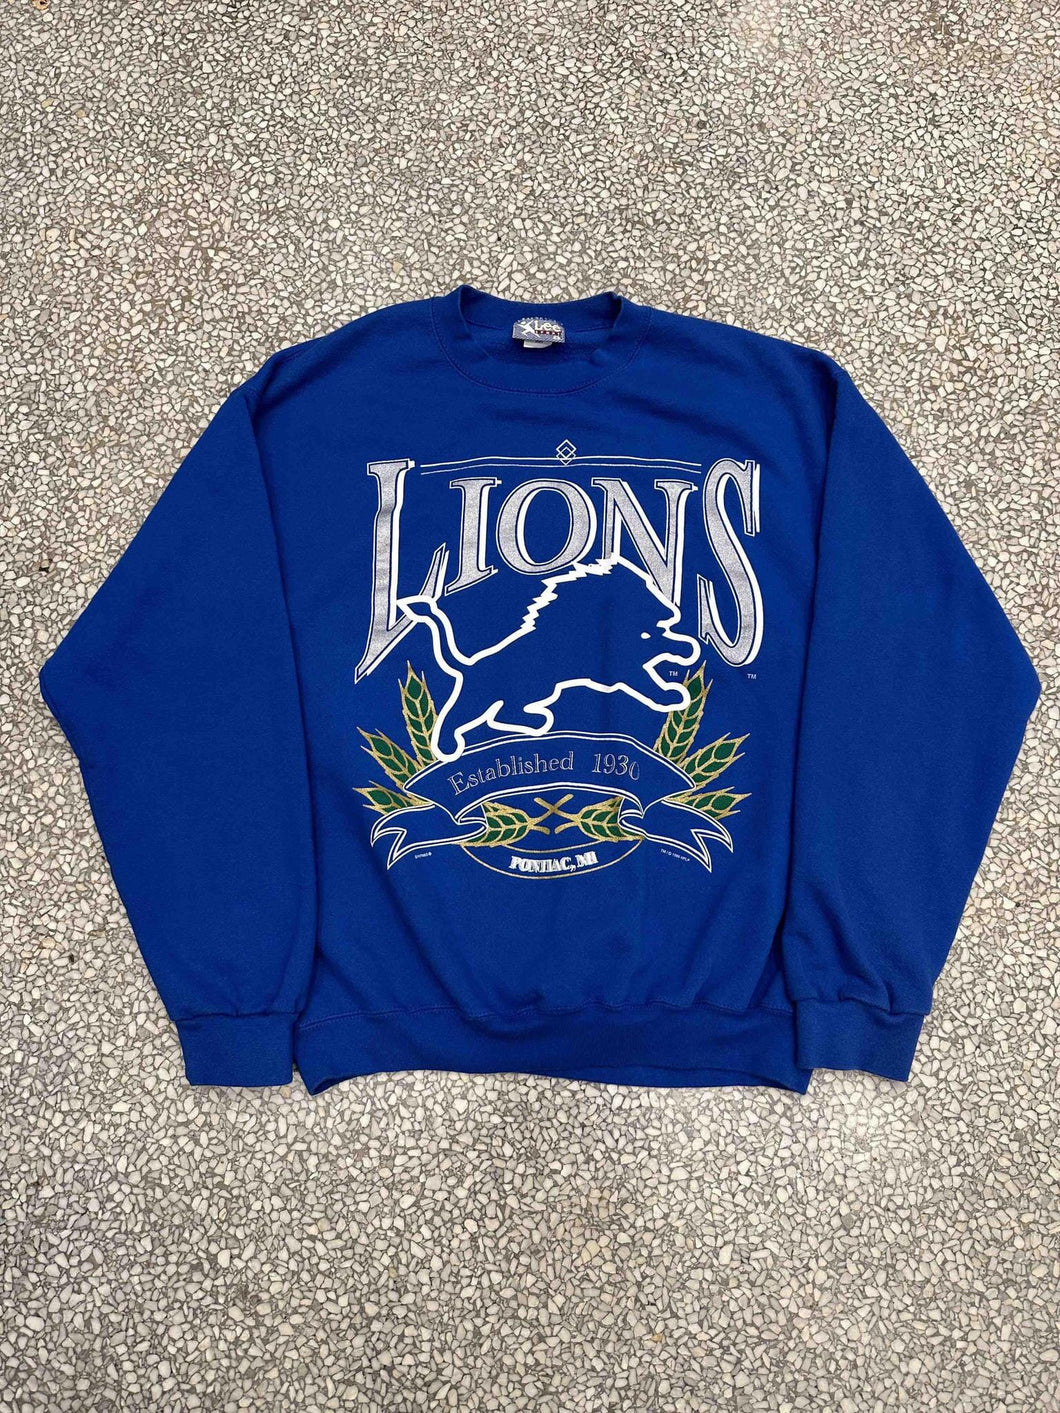 Detroit Lions Vintage 1995 Crest Crewneck Blue ABC Vintage 